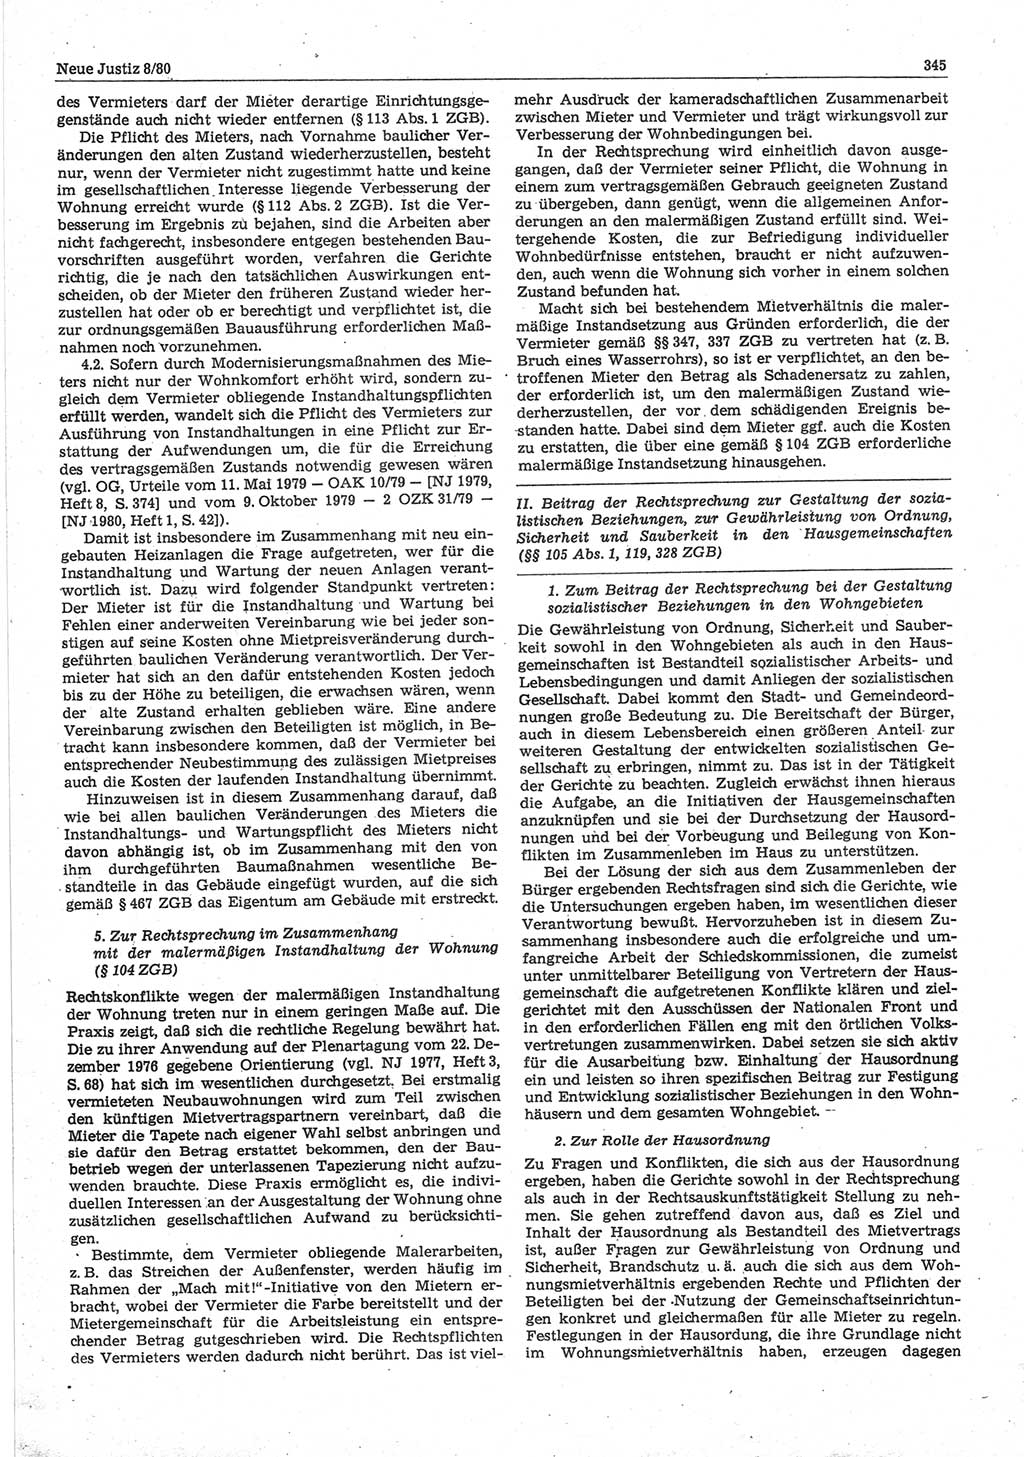 Neue Justiz (NJ), Zeitschrift für sozialistisches Recht und Gesetzlichkeit [Deutsche Demokratische Republik (DDR)], 34. Jahrgang 1980, Seite 345 (NJ DDR 1980, S. 345)